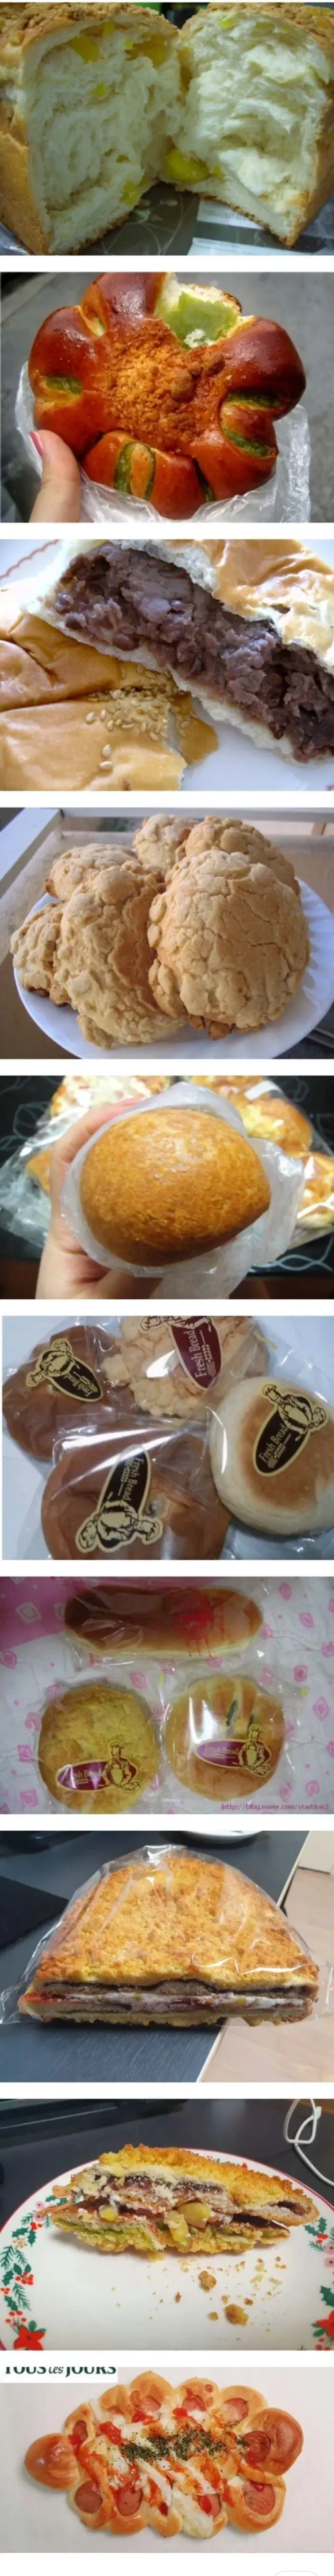 부모님이 사오는 빵 특징.jpg | 인스티즈